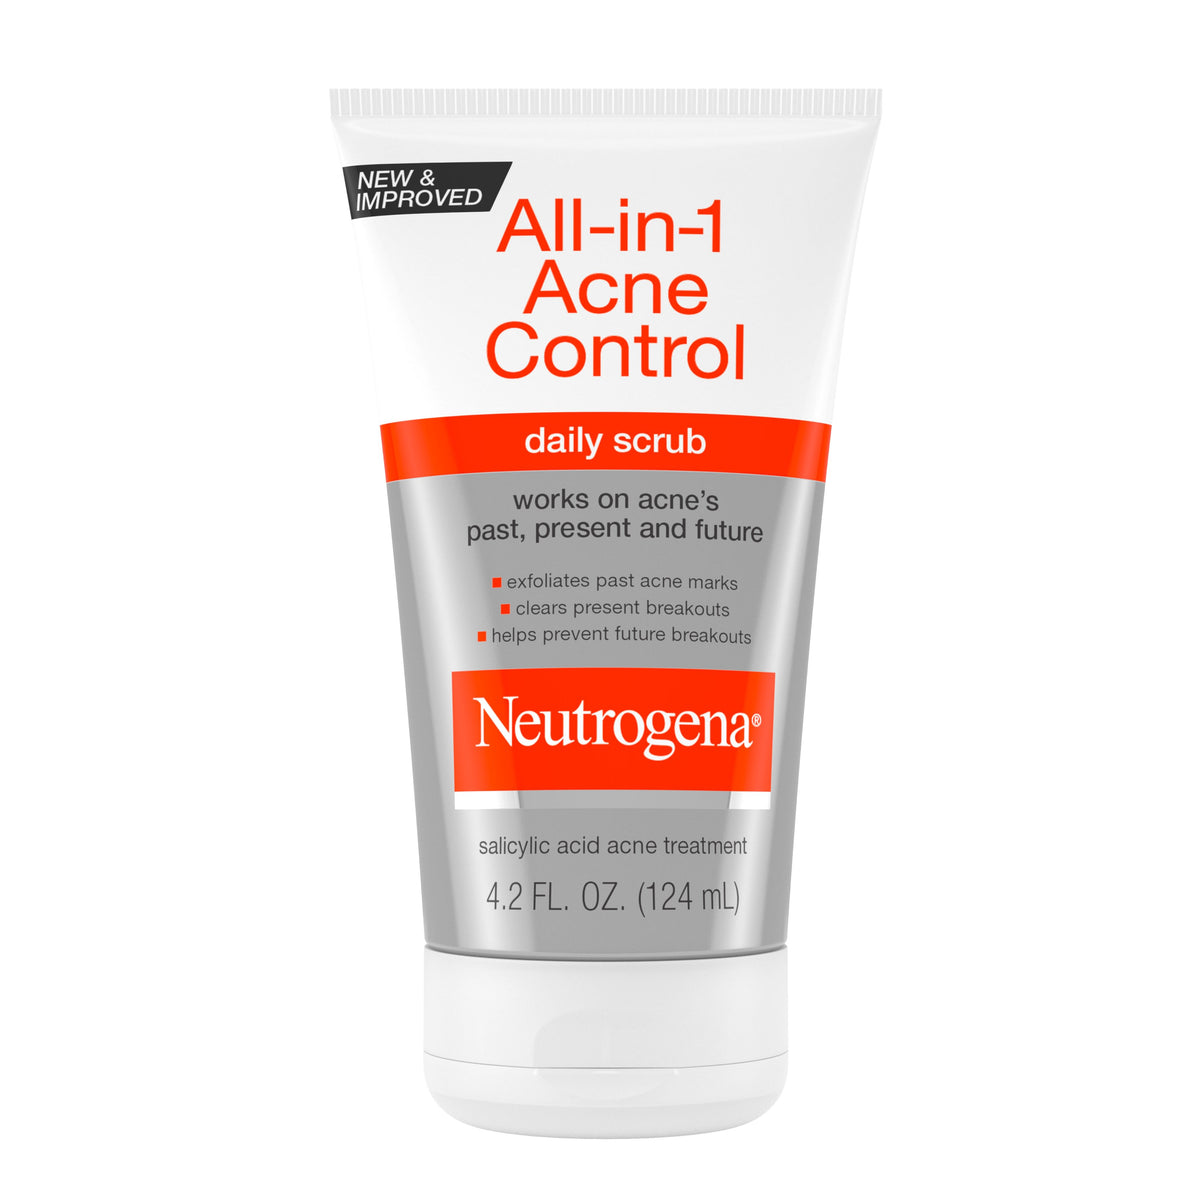 Neutrogena All-In-1 Acne Control Daily Scrub, 4.2 fl oz